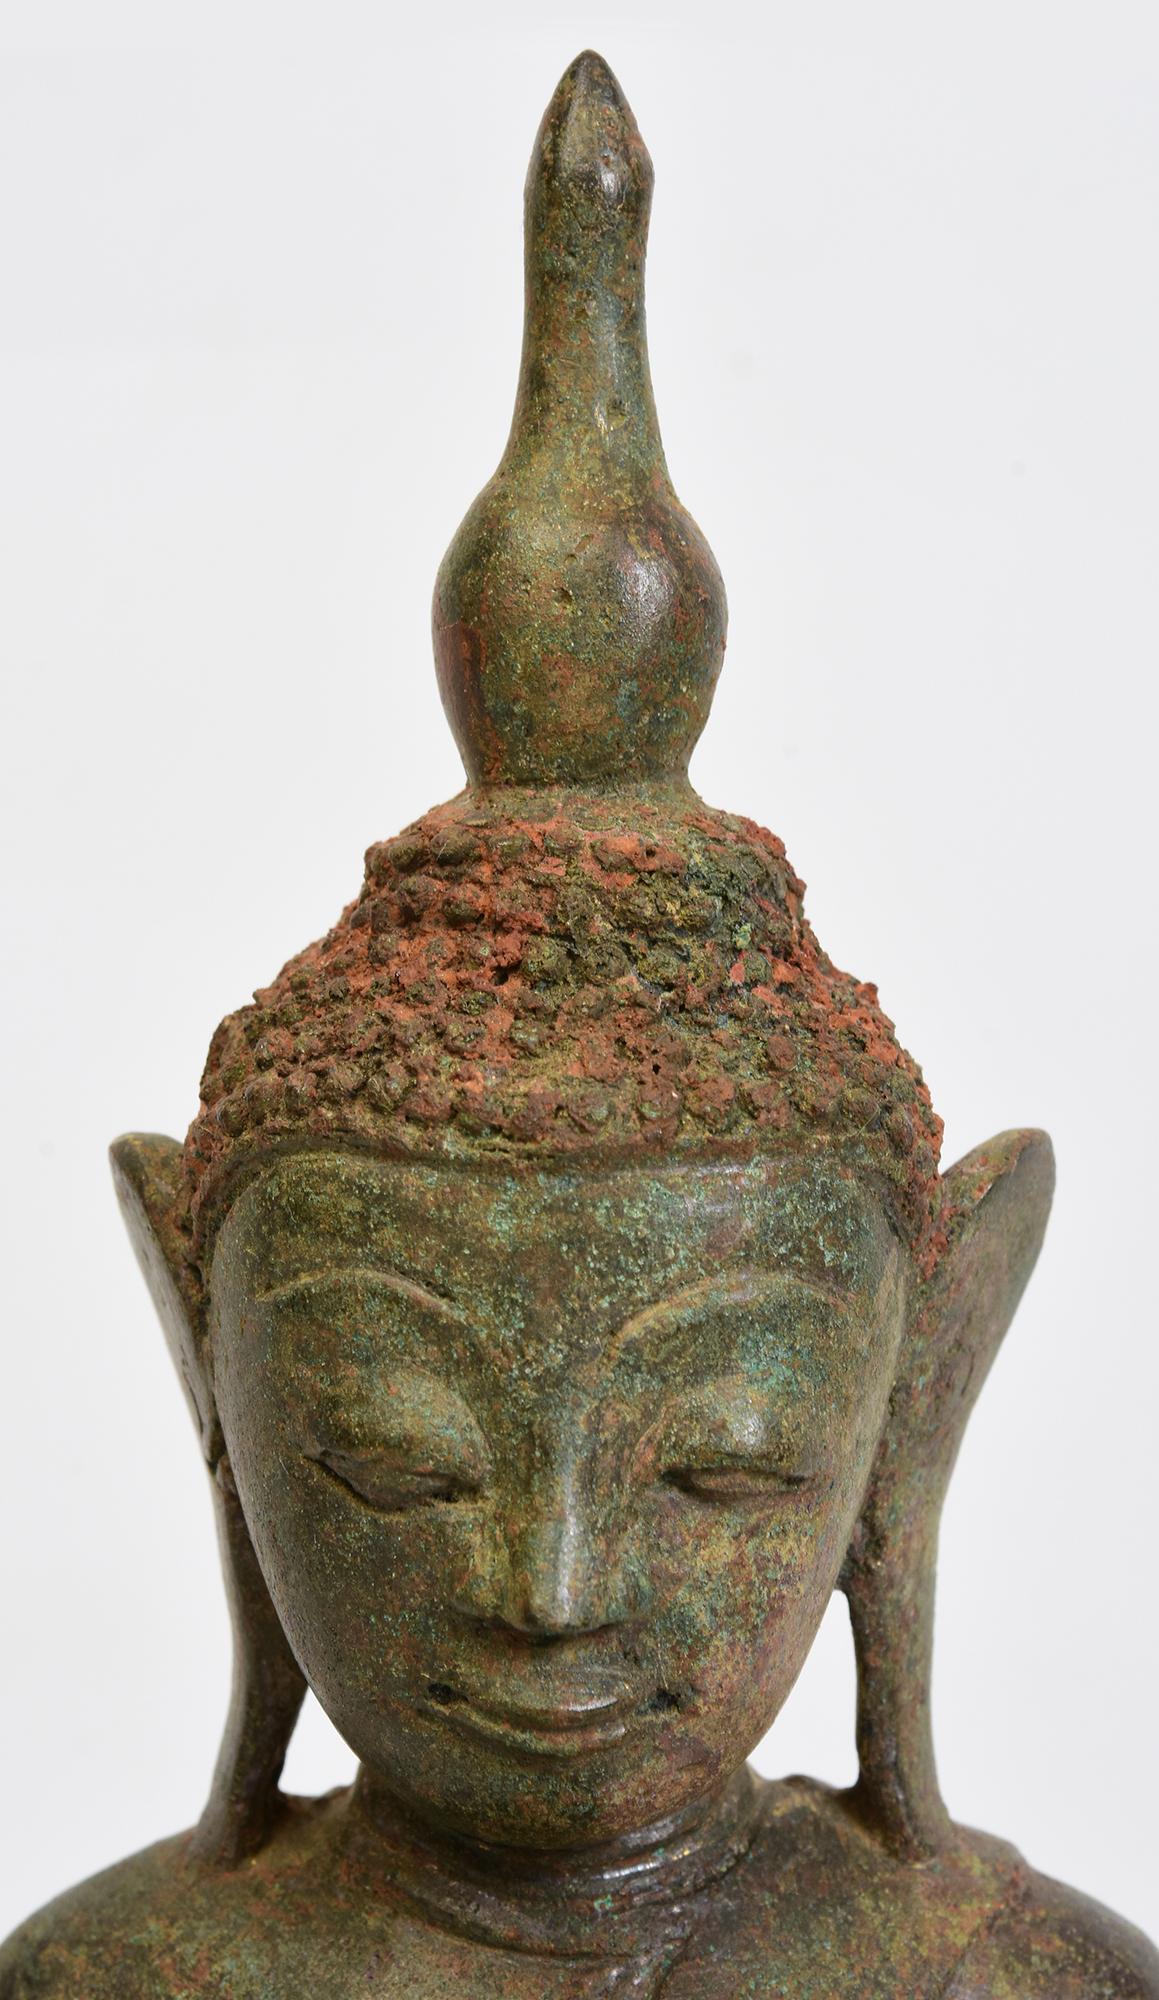 Antiker burmesischer Bronze-Buddha in Mara-Vijaya-Haltung (die Erde zum Zeugen rufen) auf doppeltem Lotussockel.

Alter: Birma, Ava-Periode, 16. Jahrhundert
Größe: Höhe 32,5 cm / Breite 16,2 cm / Tiefe 10,4 cm.
Zustand: Einige altersbedingte